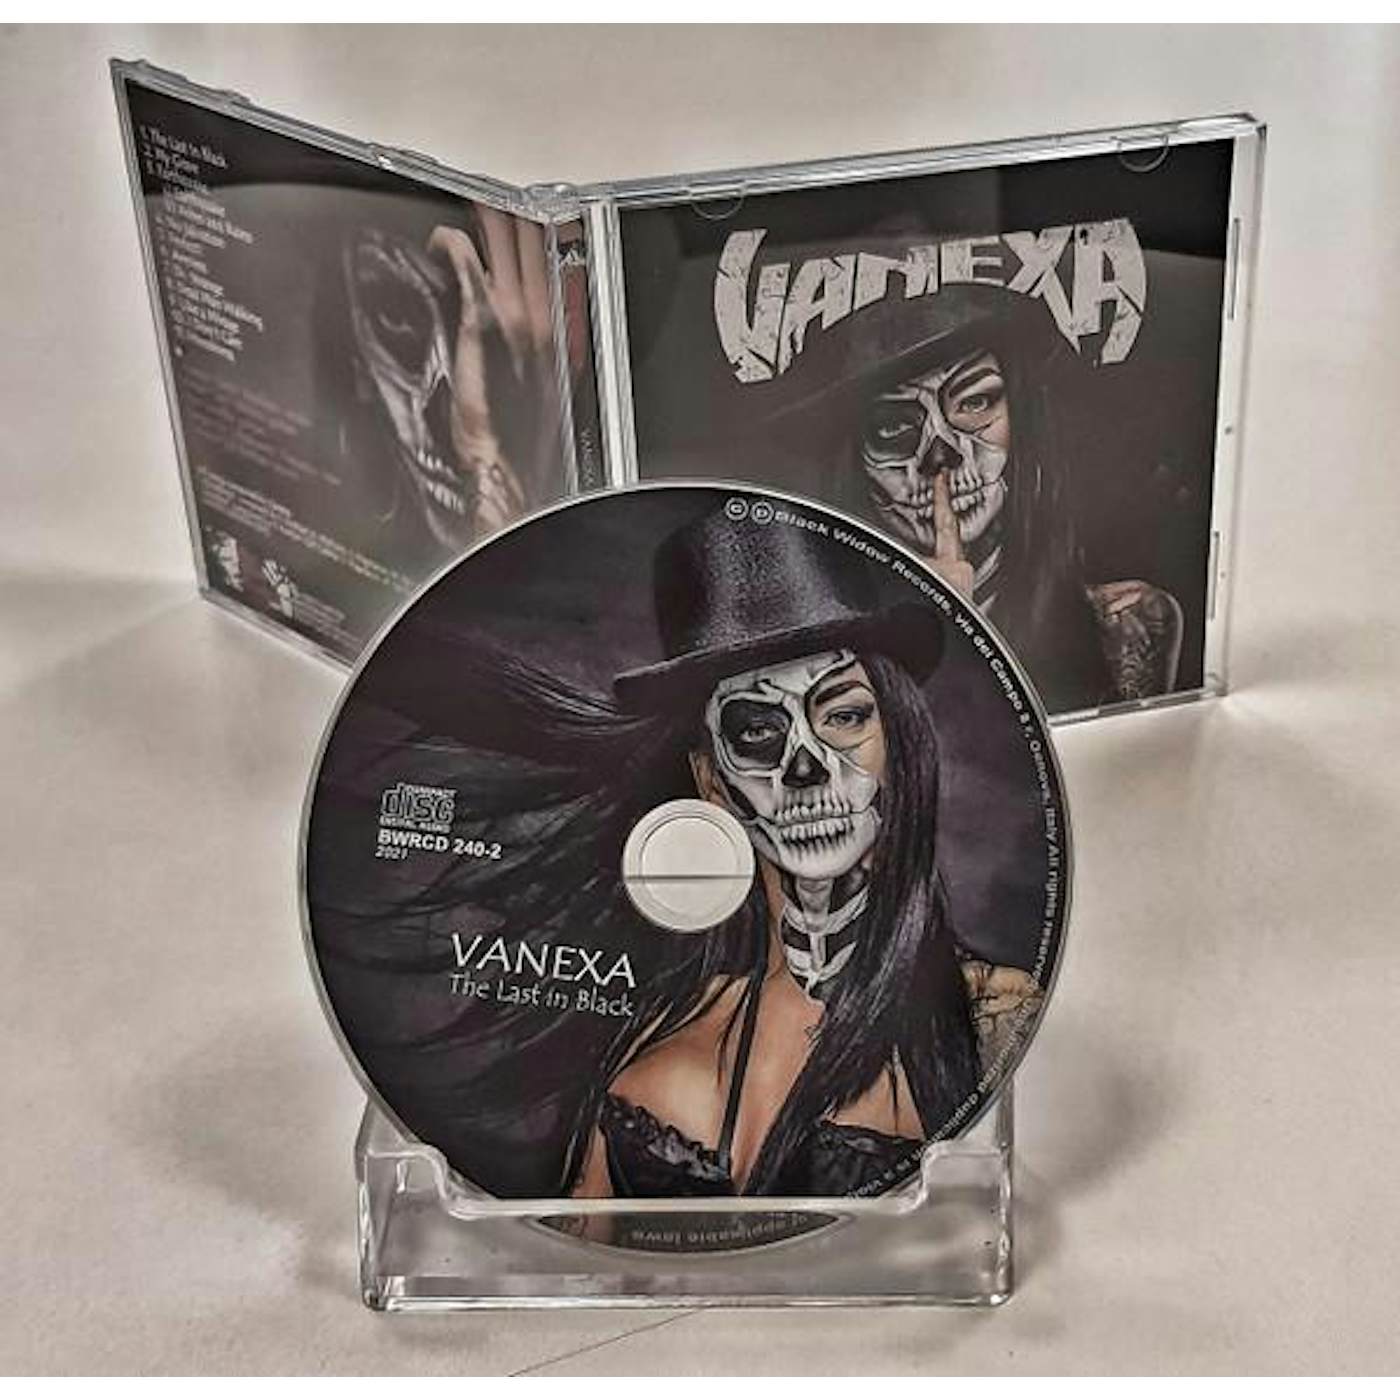 Vanexa LAST IN BLACK CD